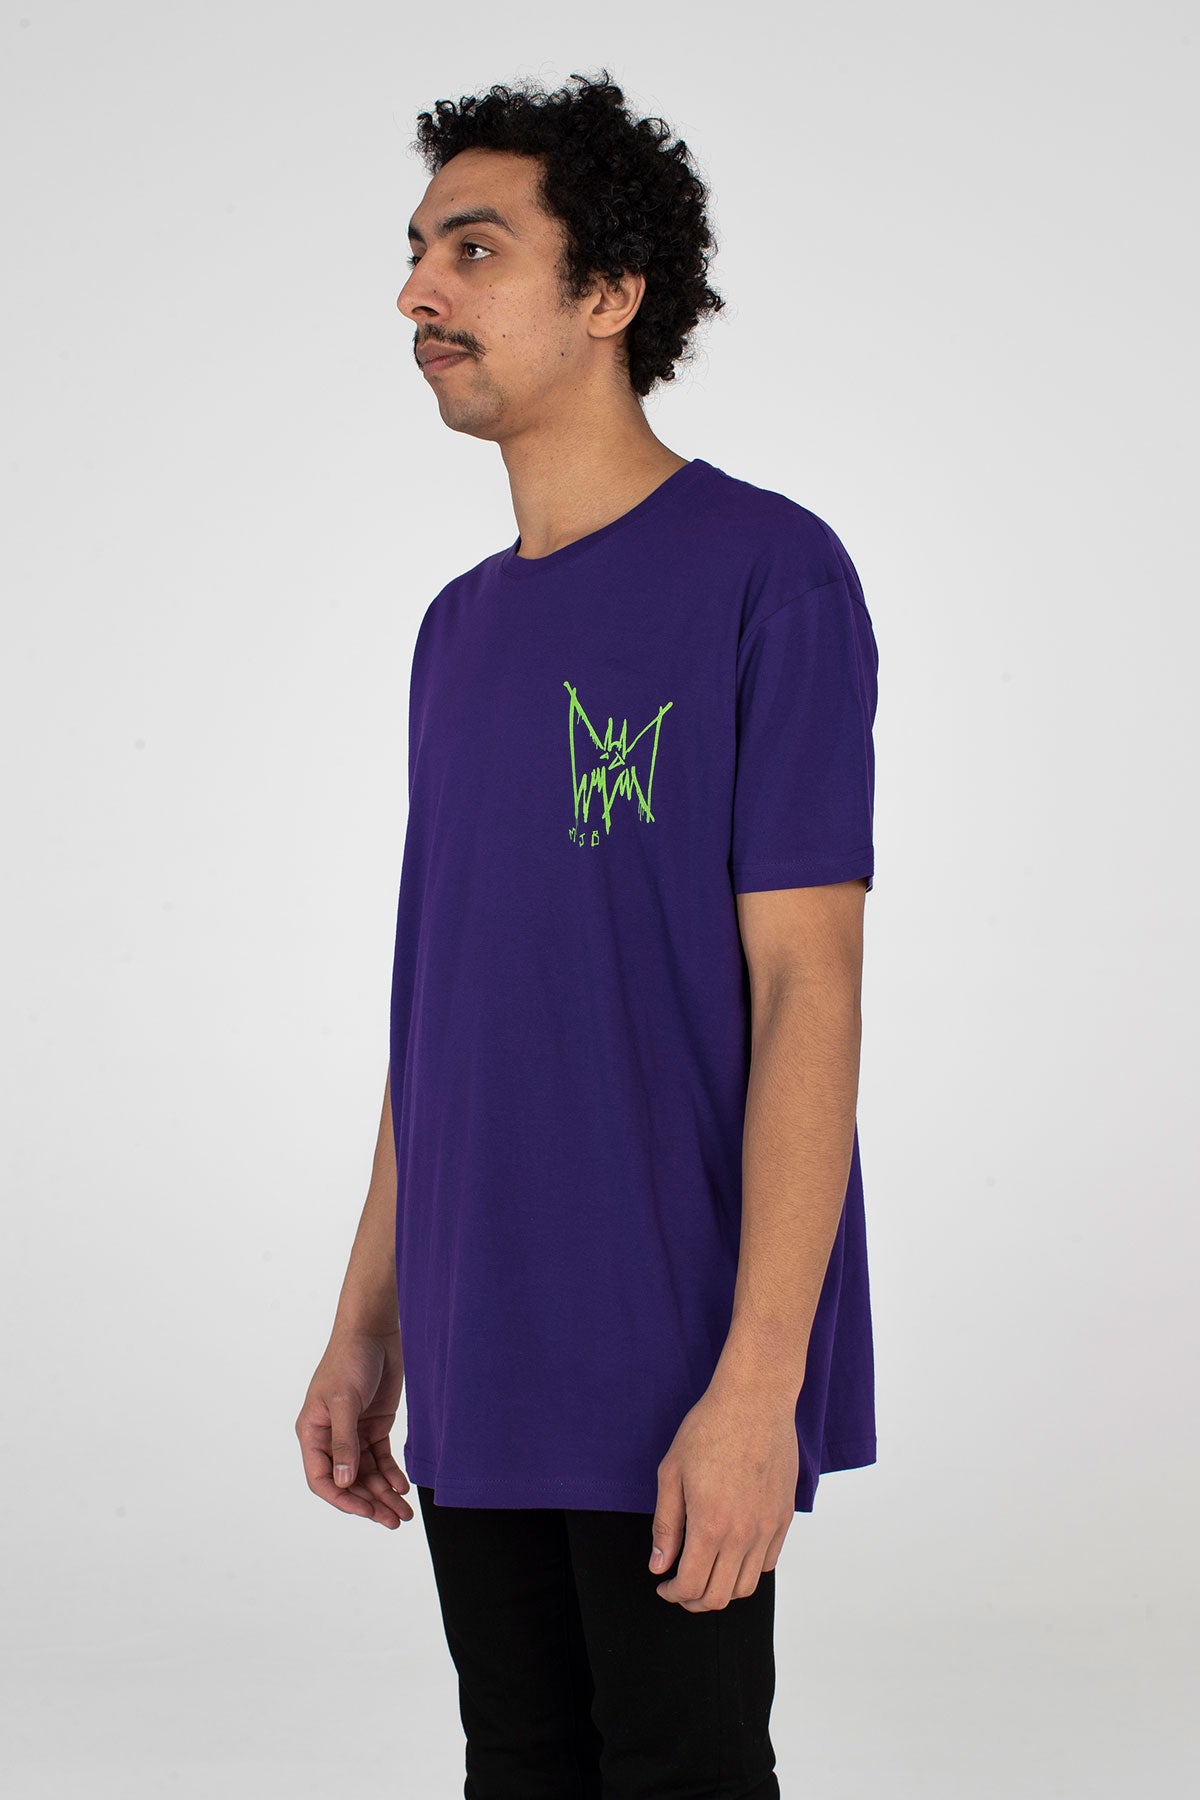 Festival T Shirt Purple Bat - TOP - MJB